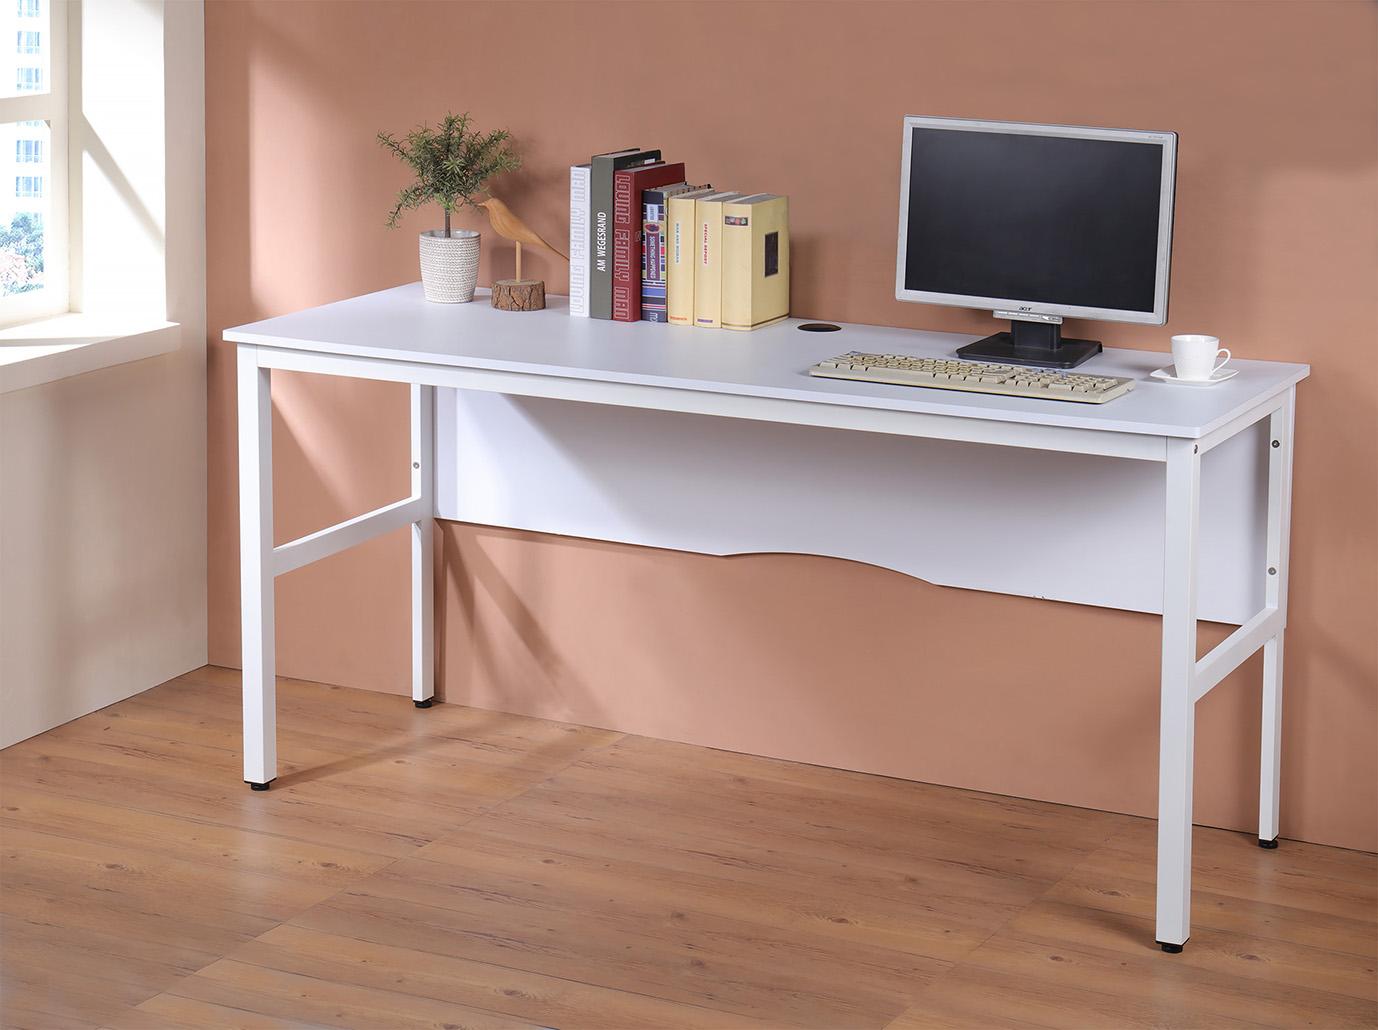 160低甲醛穩重型工作桌(附收線孔+調整腳墊) 電腦桌 書桌 辦公桌 型號DE1606N 要買要快